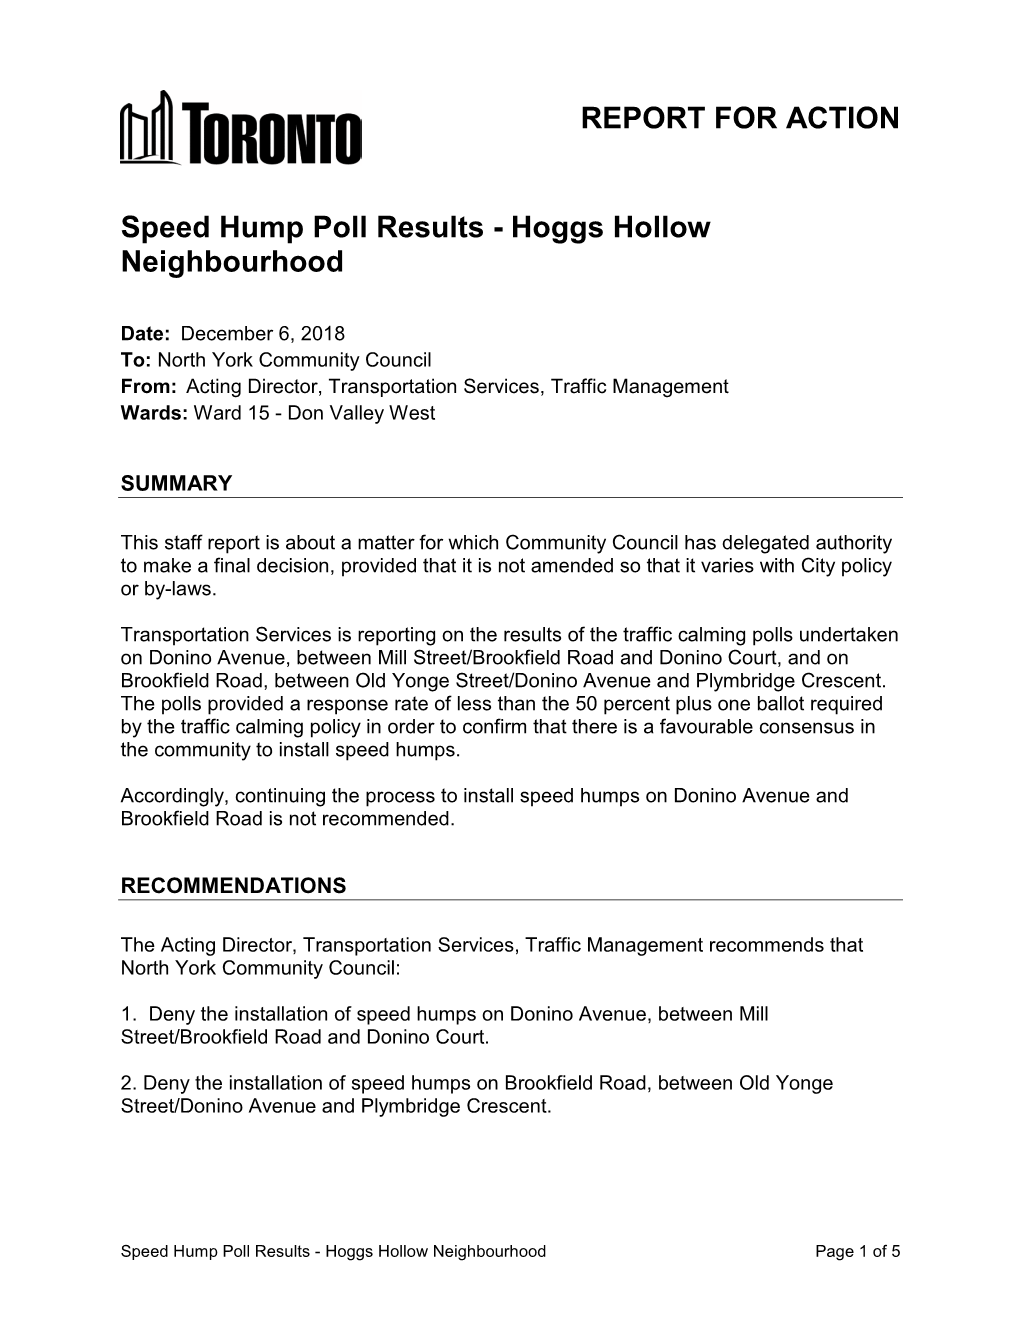 Speed Hump Poll Results - Hoggs Hollow Neighbourhood